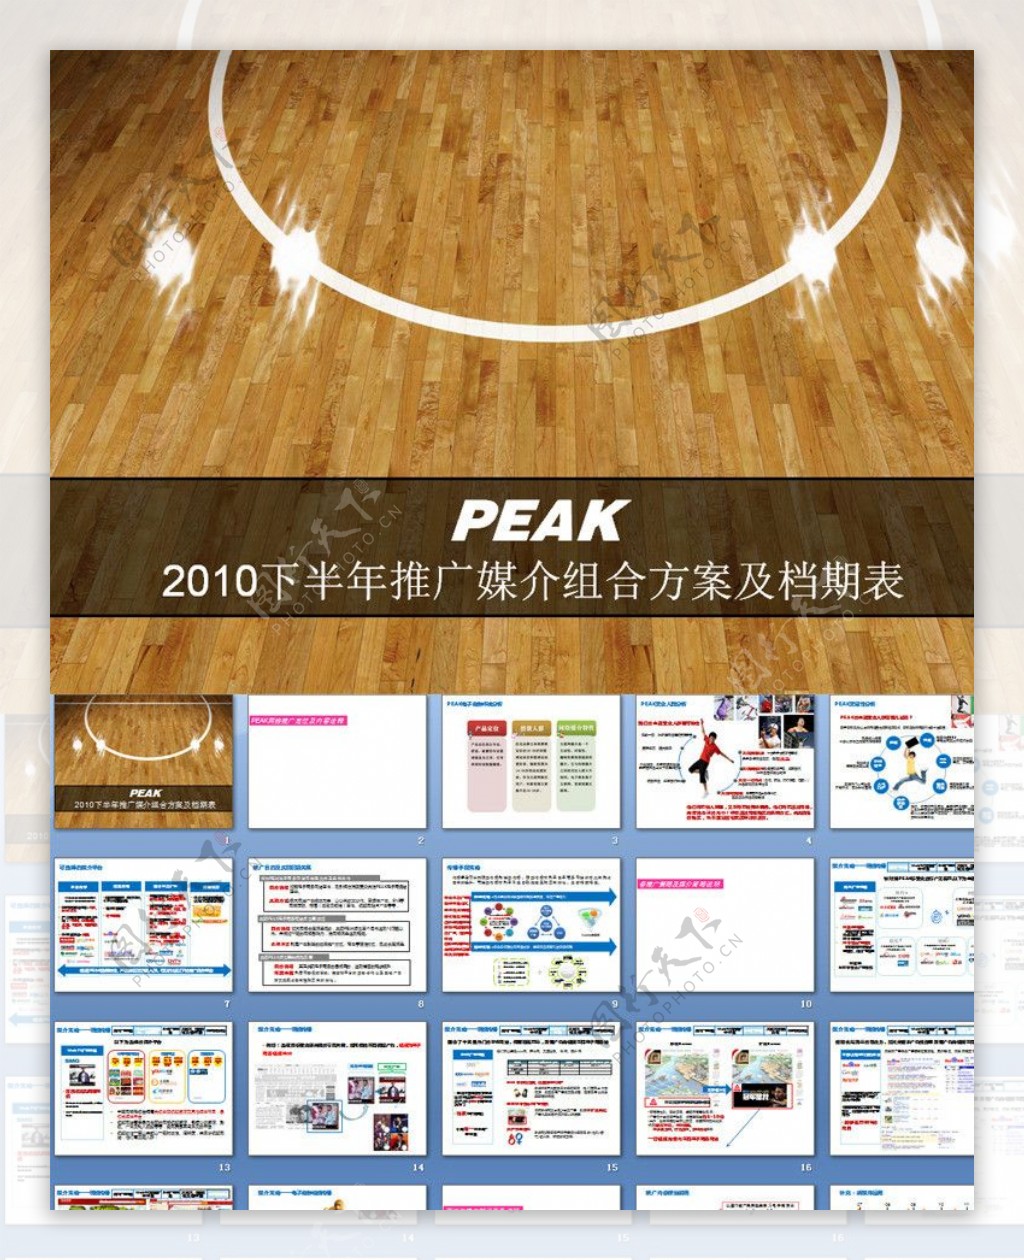 PEAK2010下半年推广媒介组合方案及档期表